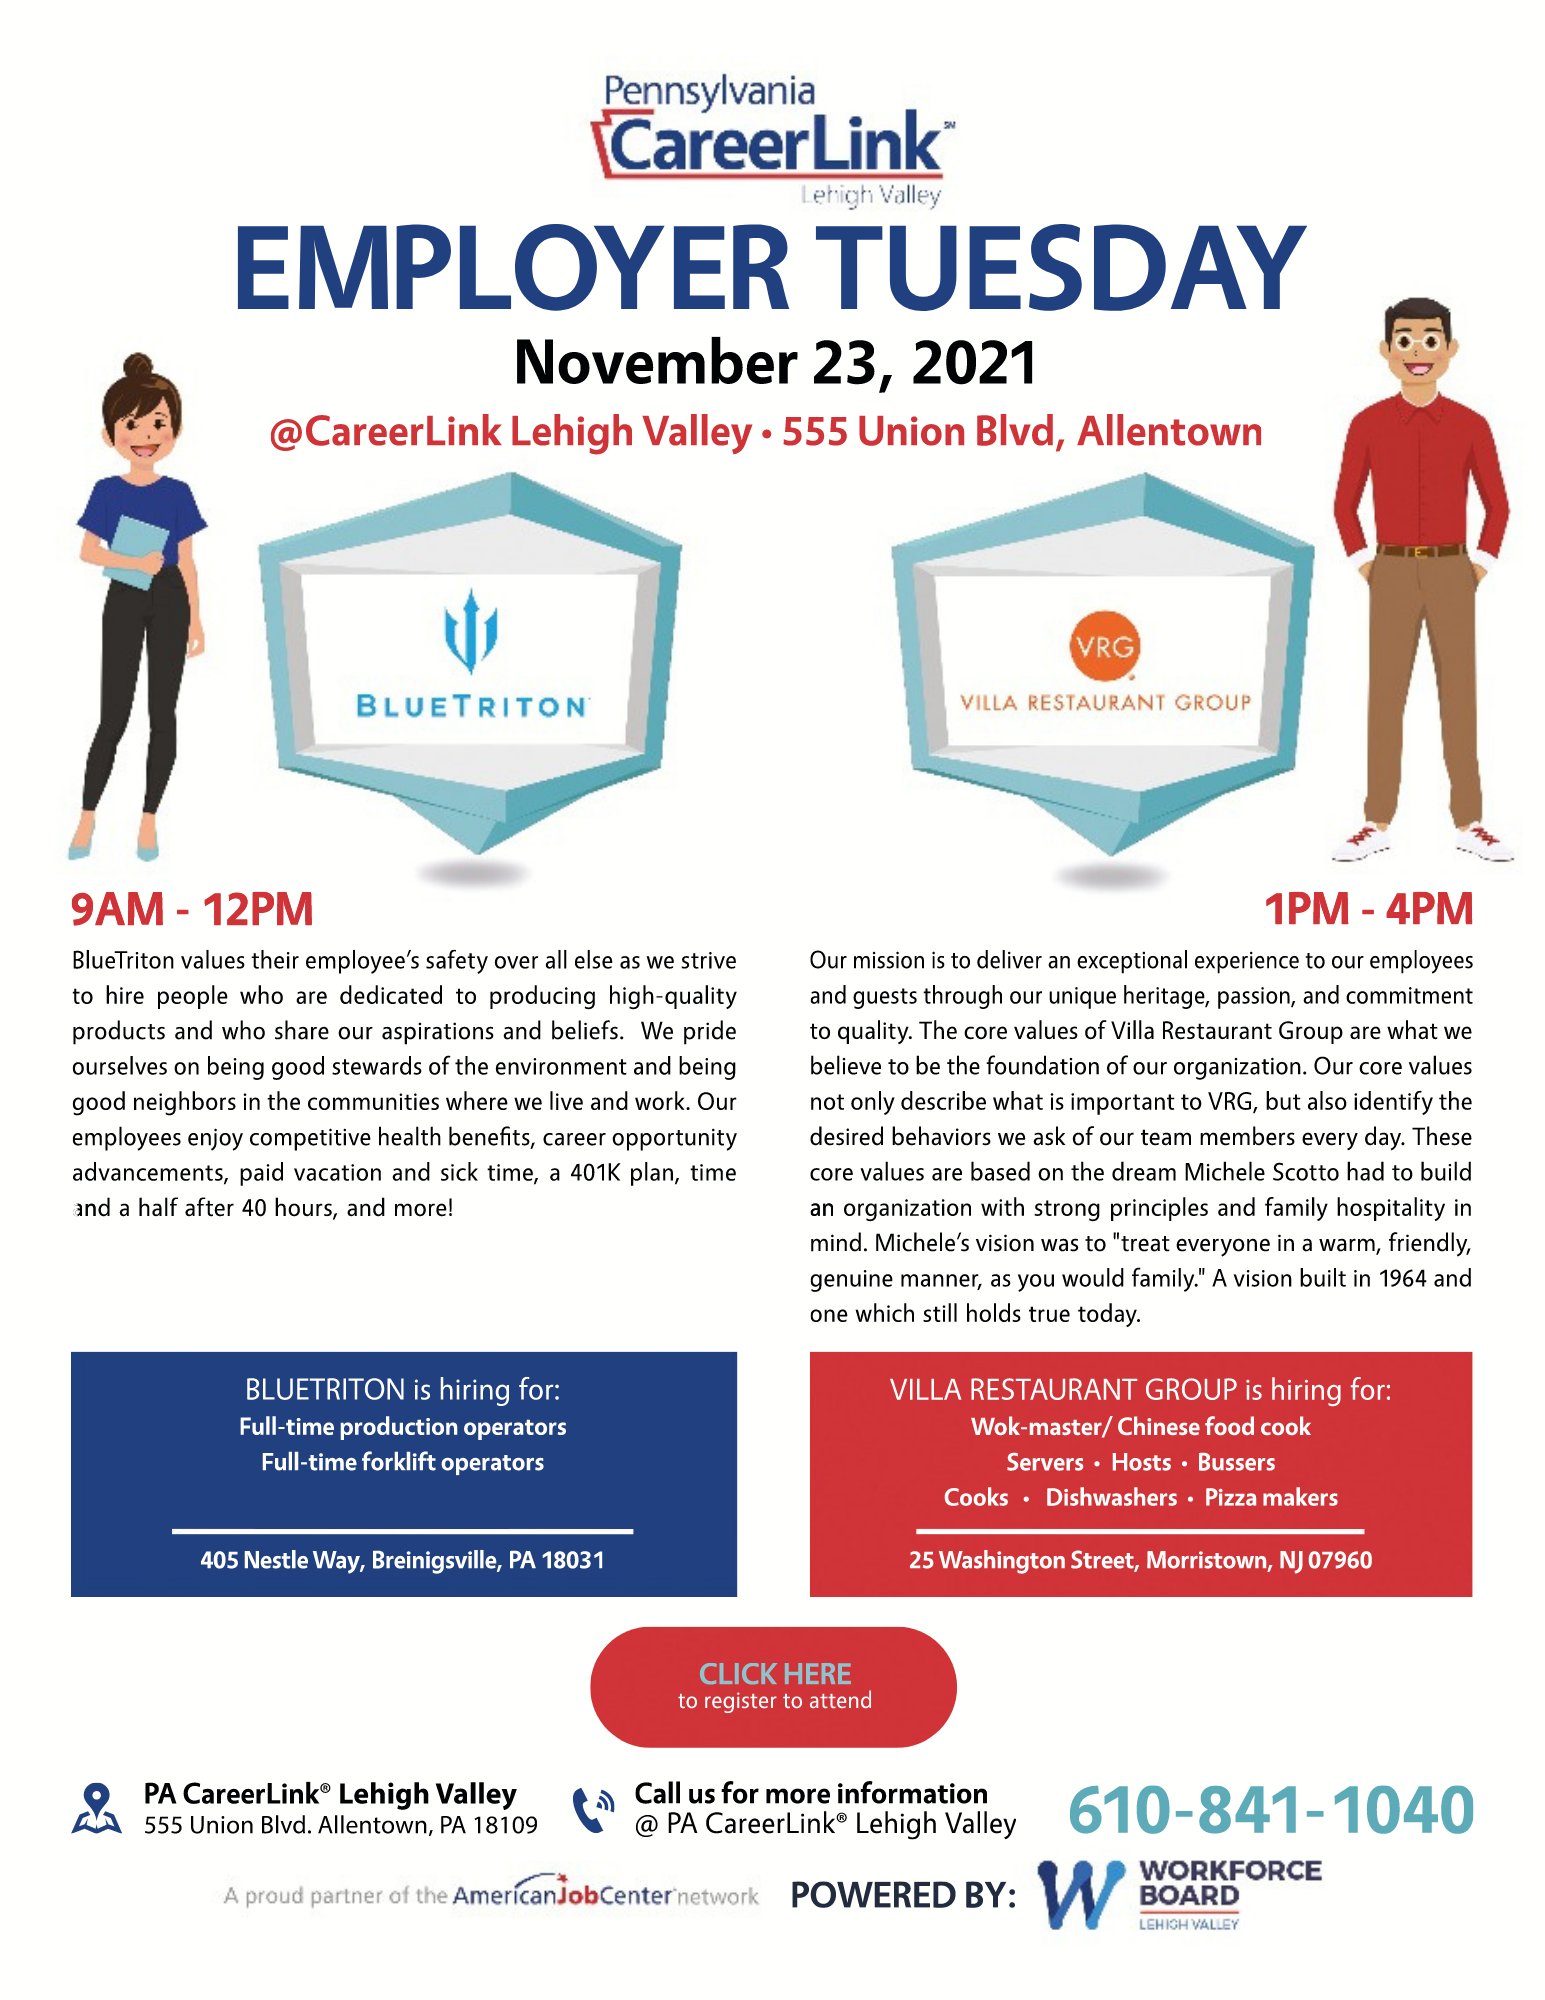 November 23 Employer Tuesday flyer